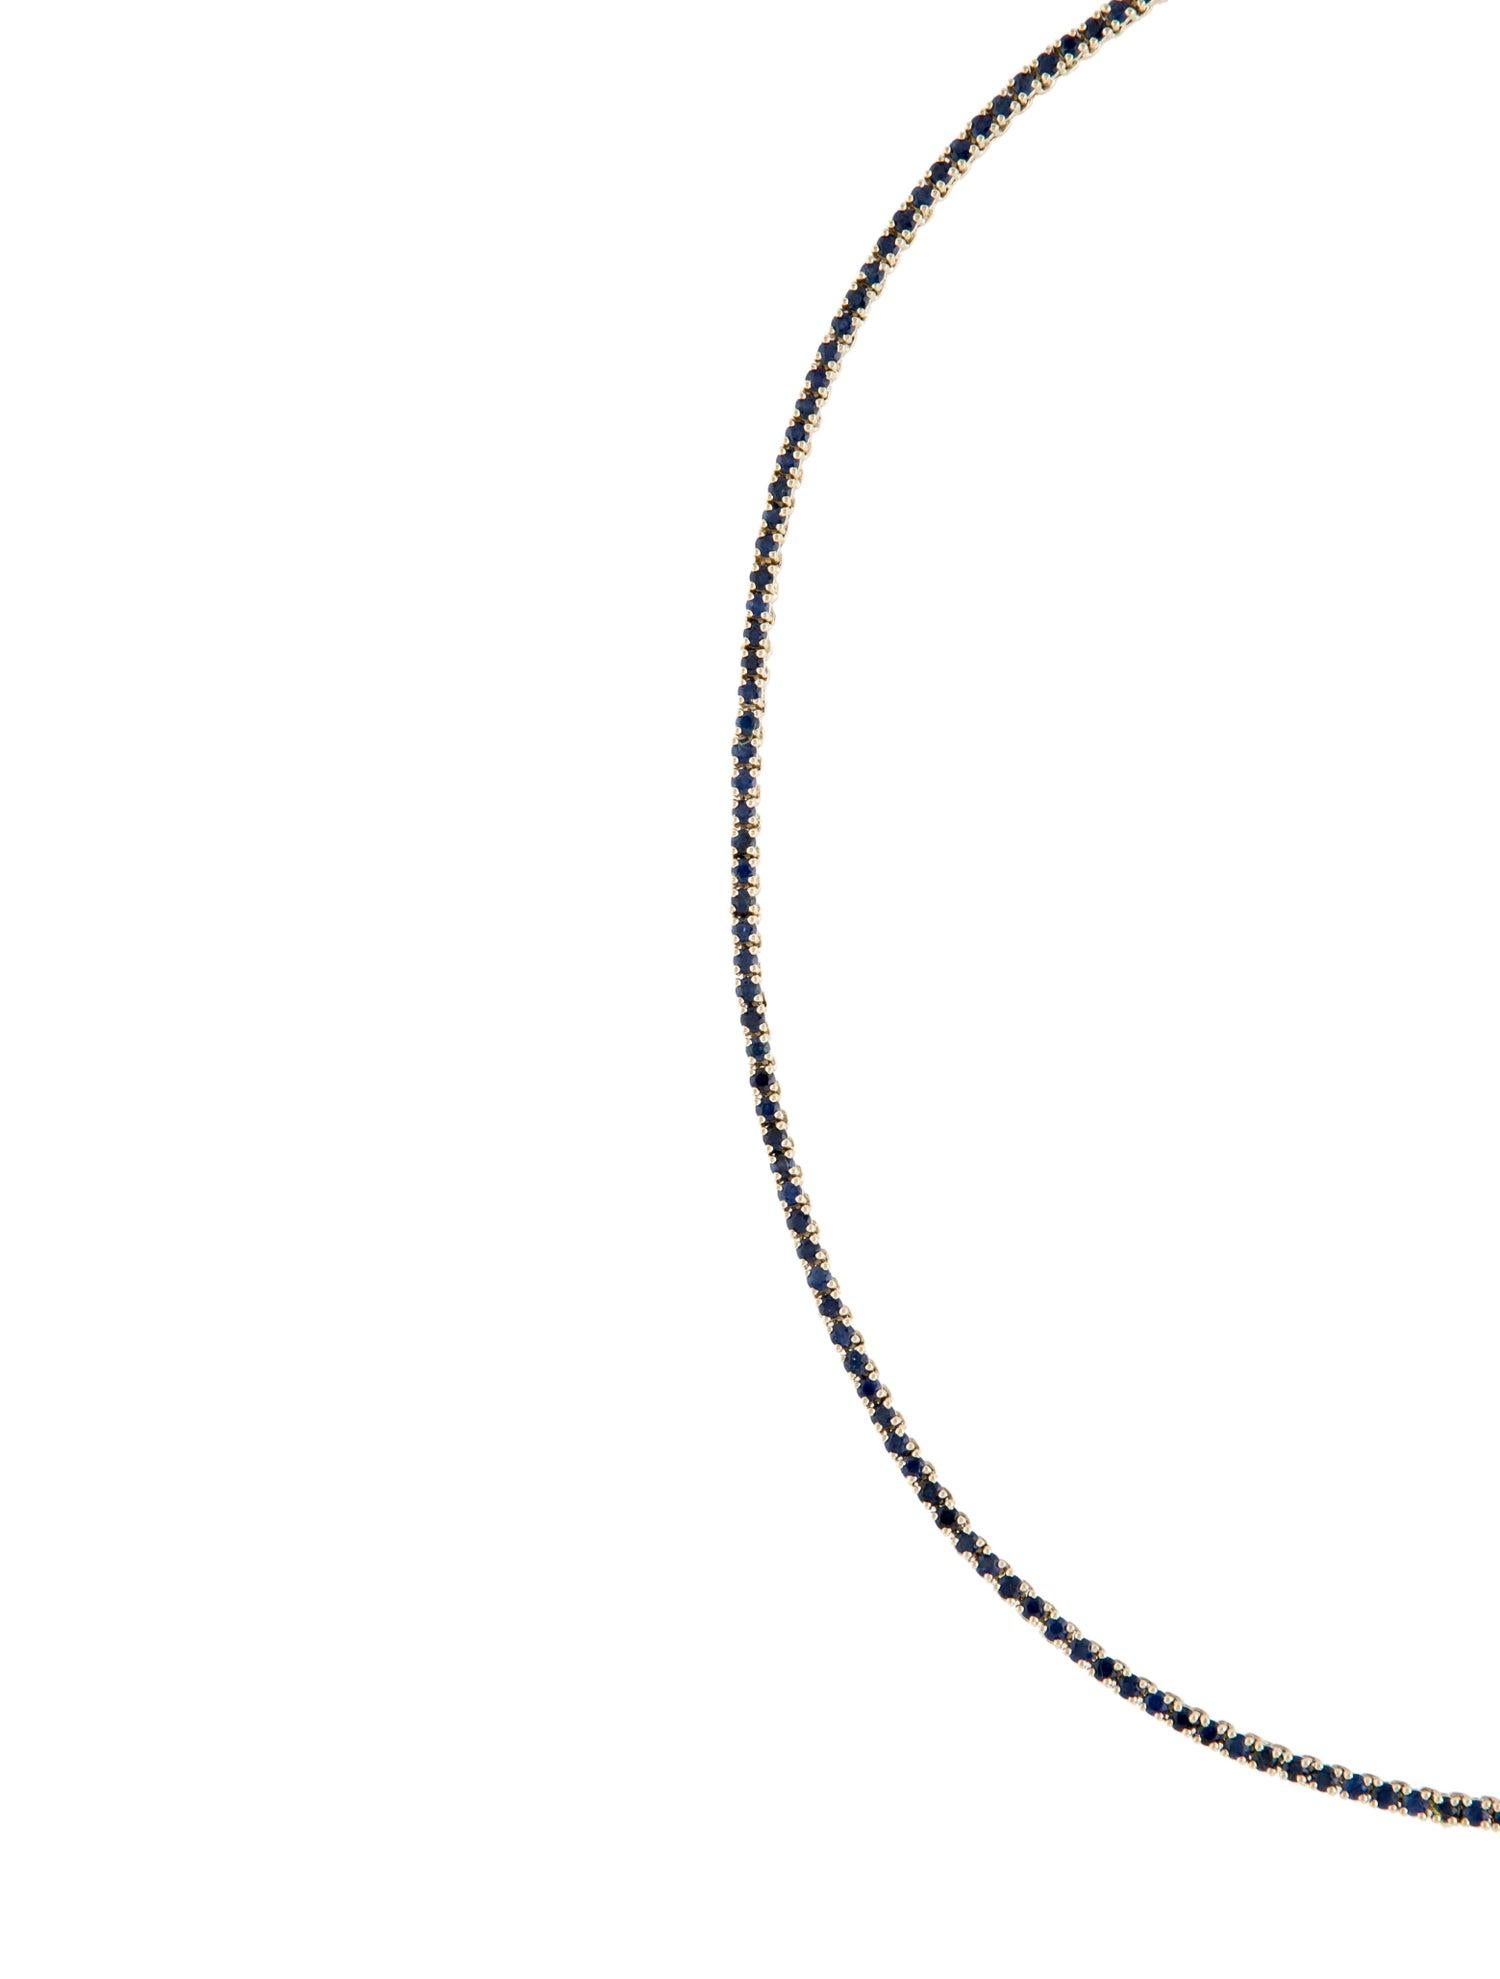 Taille brillant Chaîne collier exquise en saphir 14 carats - Bijoux fantaisie élégants en pierres précieuses en vente